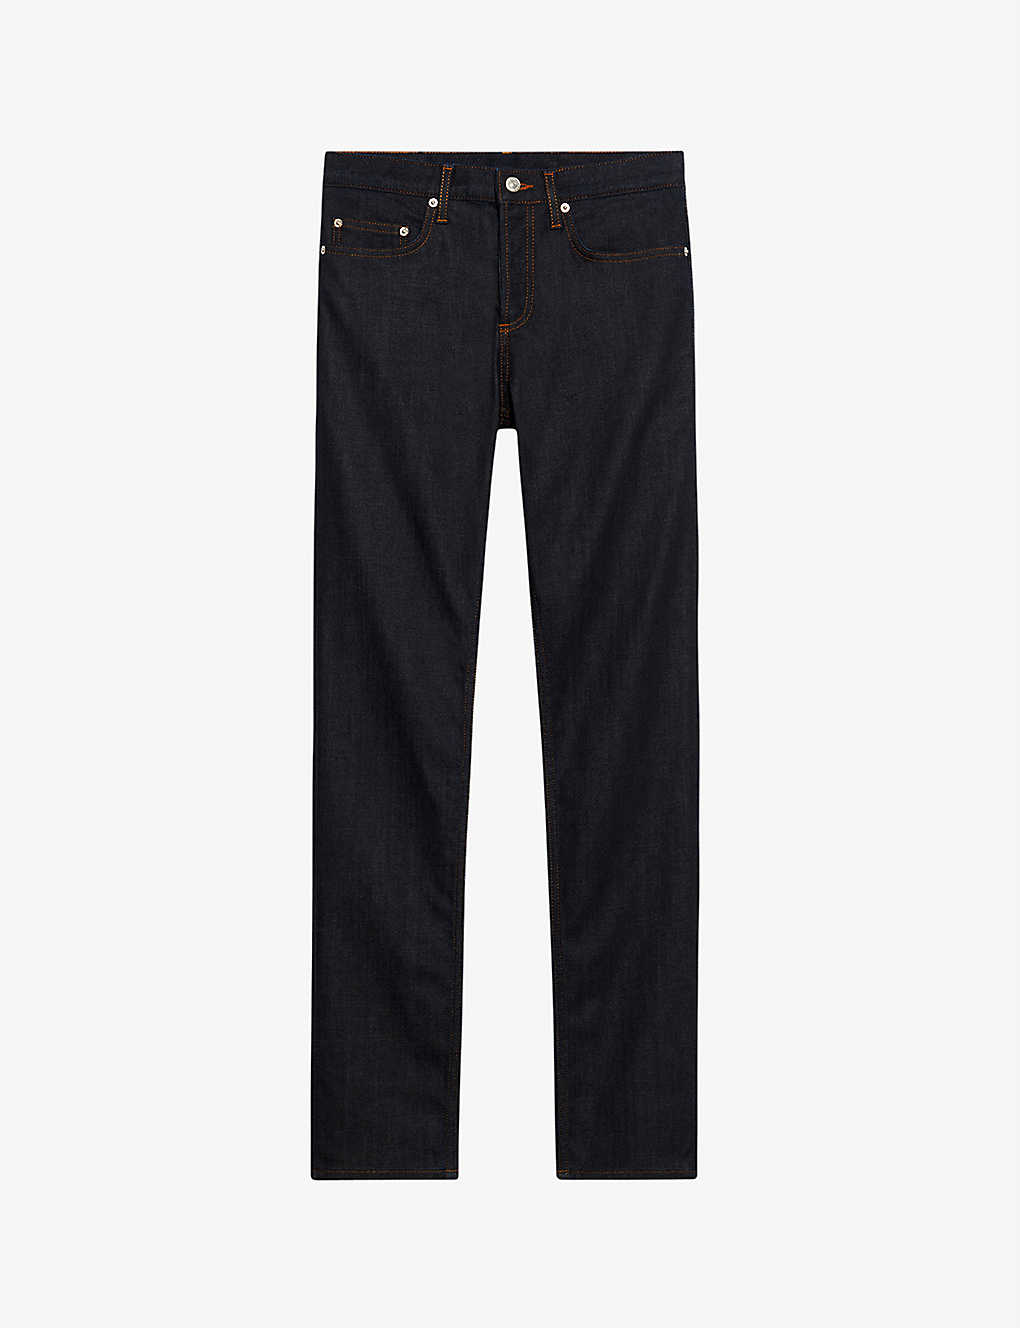 Shop Sandro Men's Denim - Jean Regular-fit Tapered Jeans